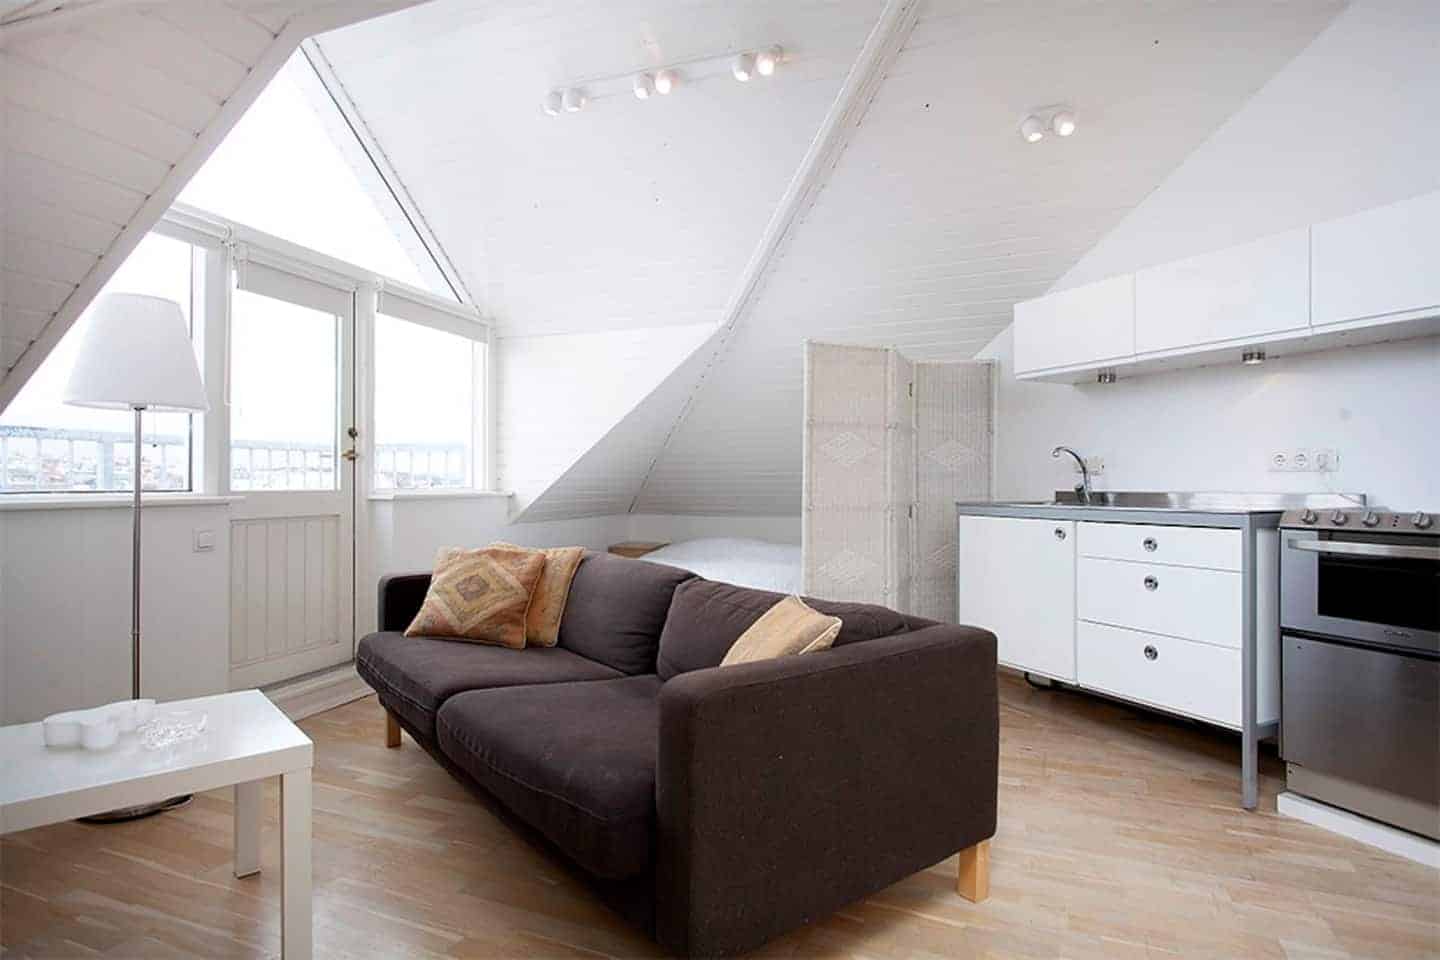 Image of Airbnb rental in Reykjavik, Iceland